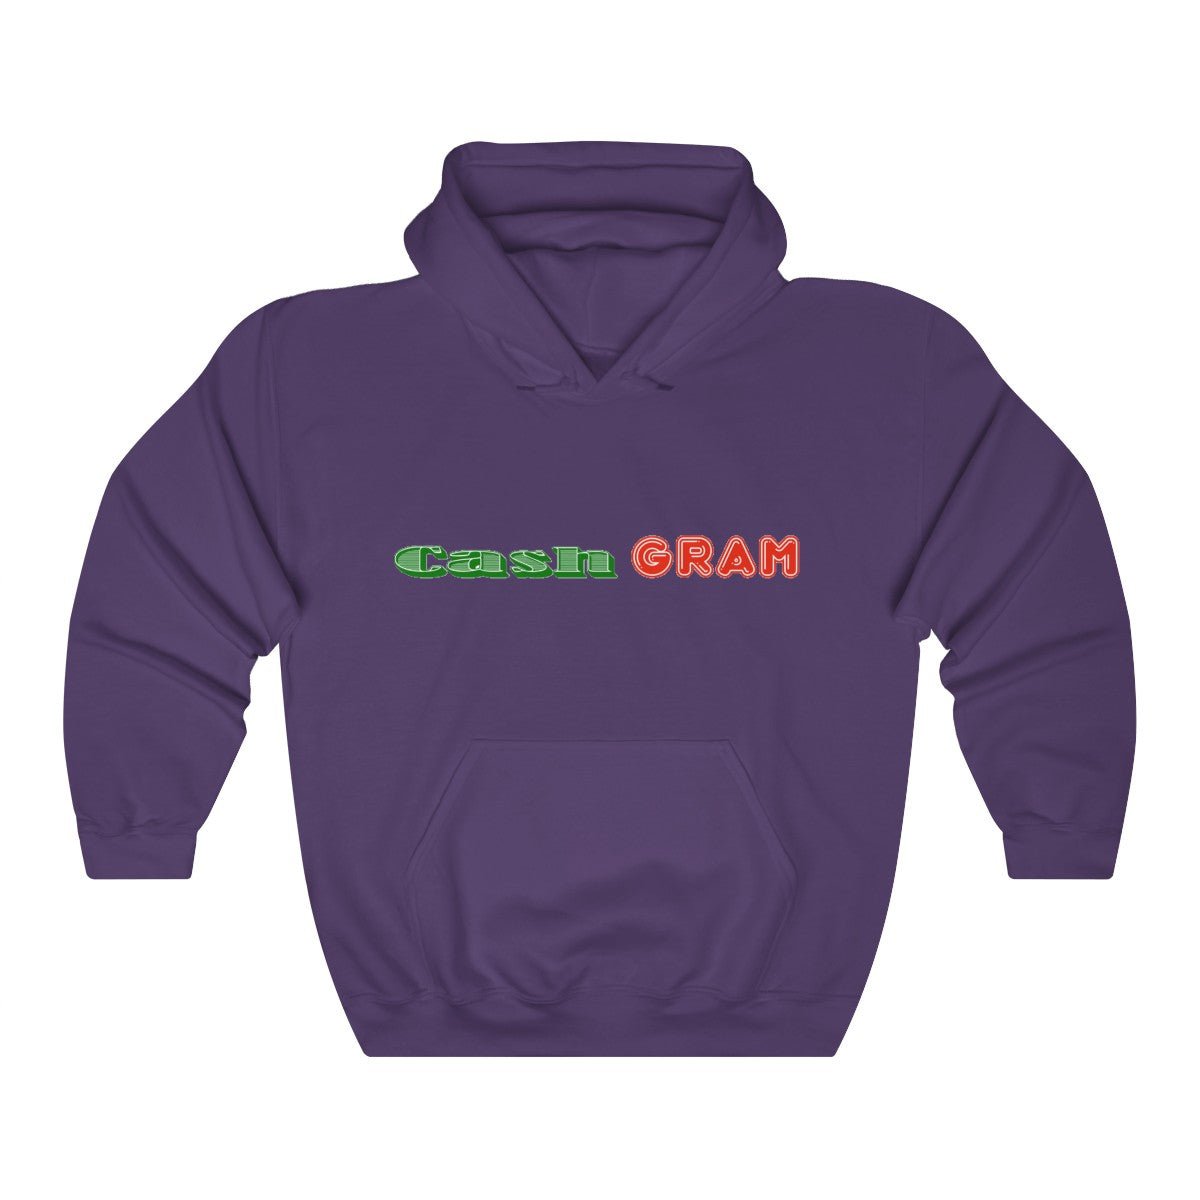 Cash Gram Hooded Sweatshirt - Slayed by Meme